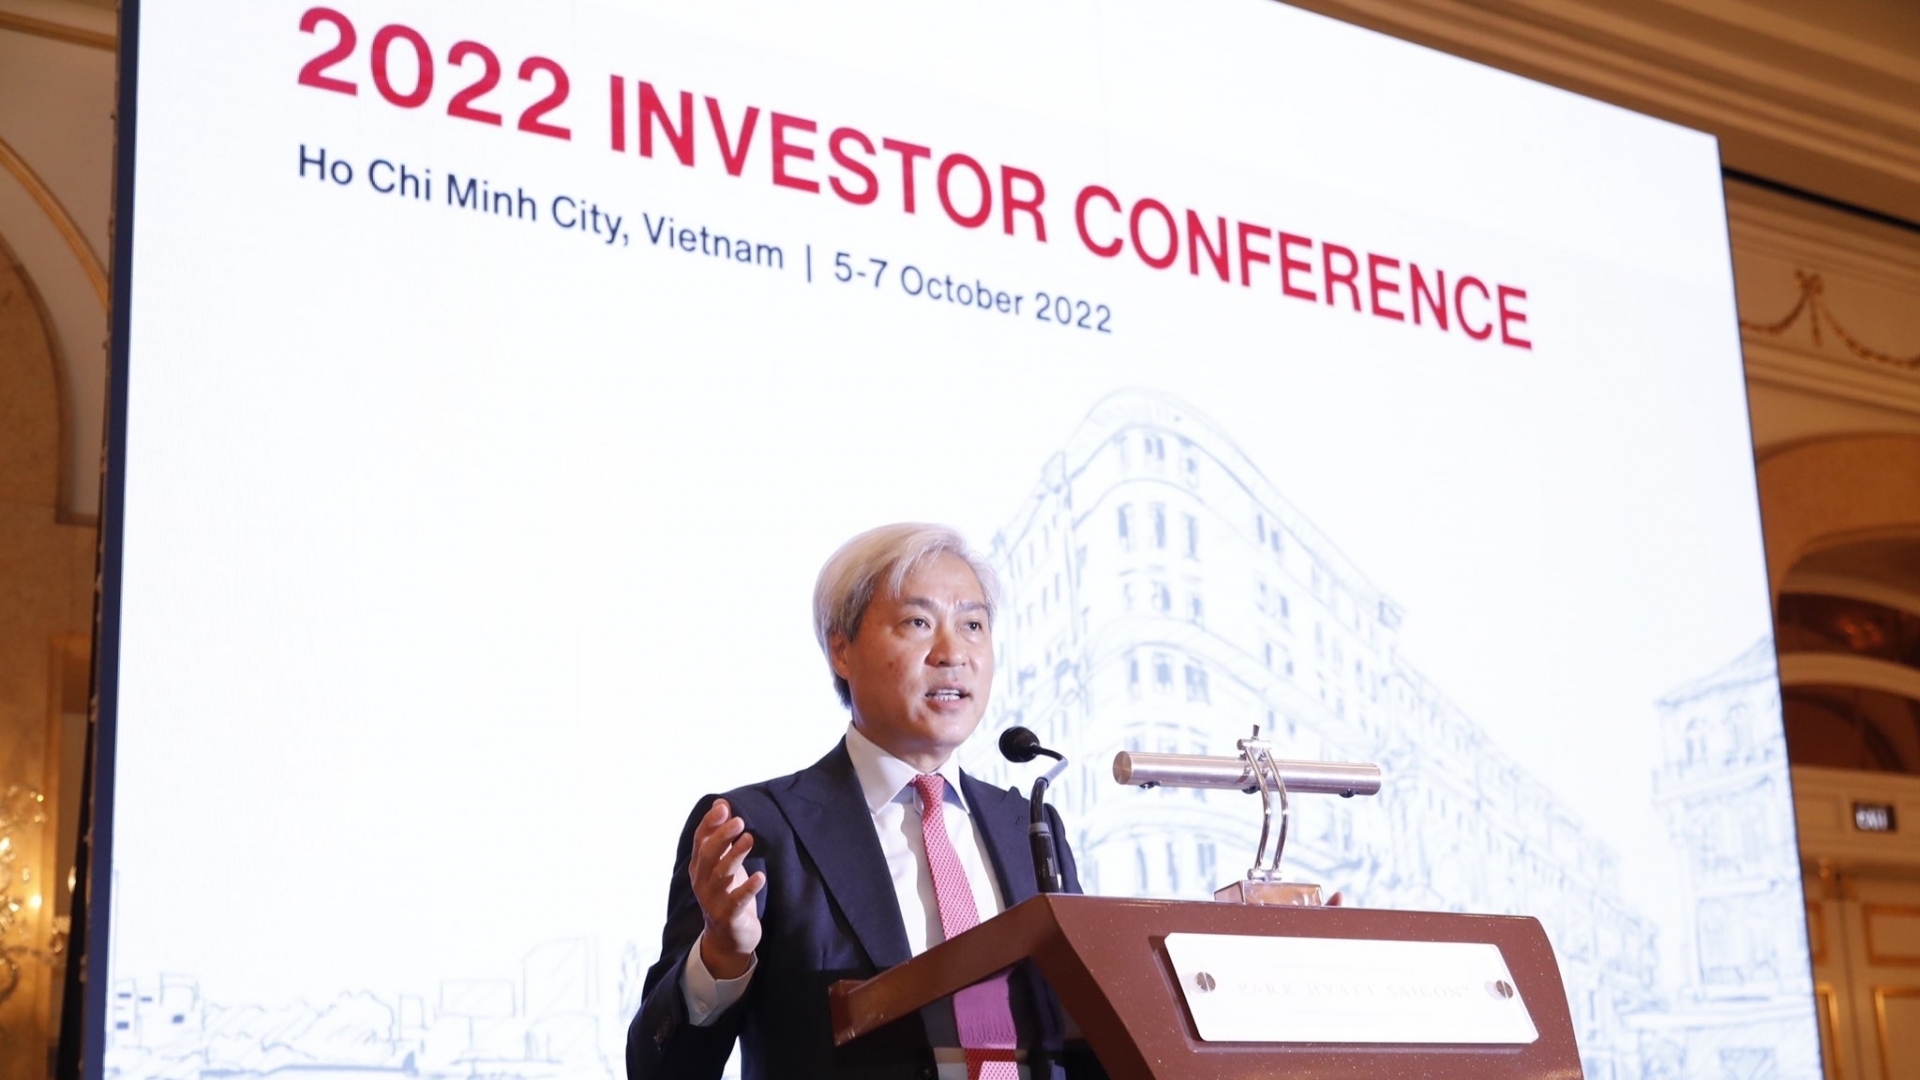 Chuyên gia VinaCapital: Nhà đầu tư muốn tìm hiểu xem cơ hội đầu tư ở Việt Nam nằm ở đâu